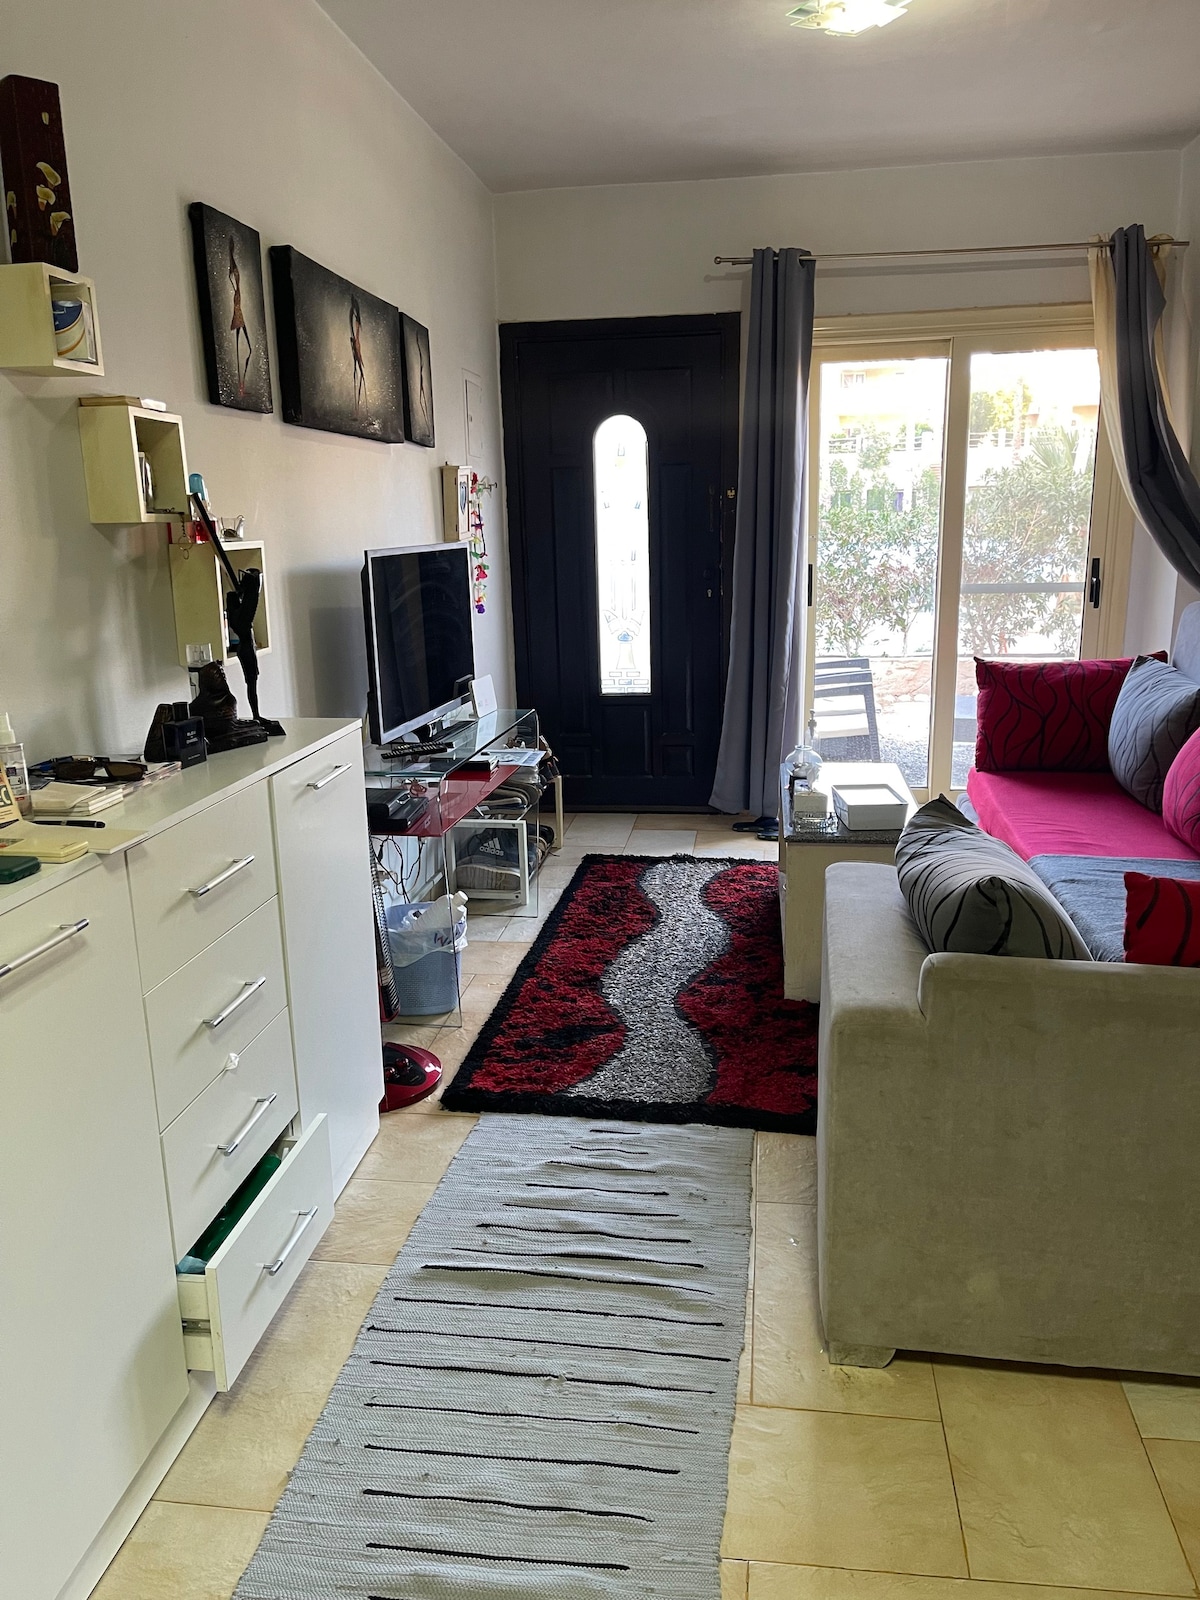 Apartment 4105 at elhayat sharm